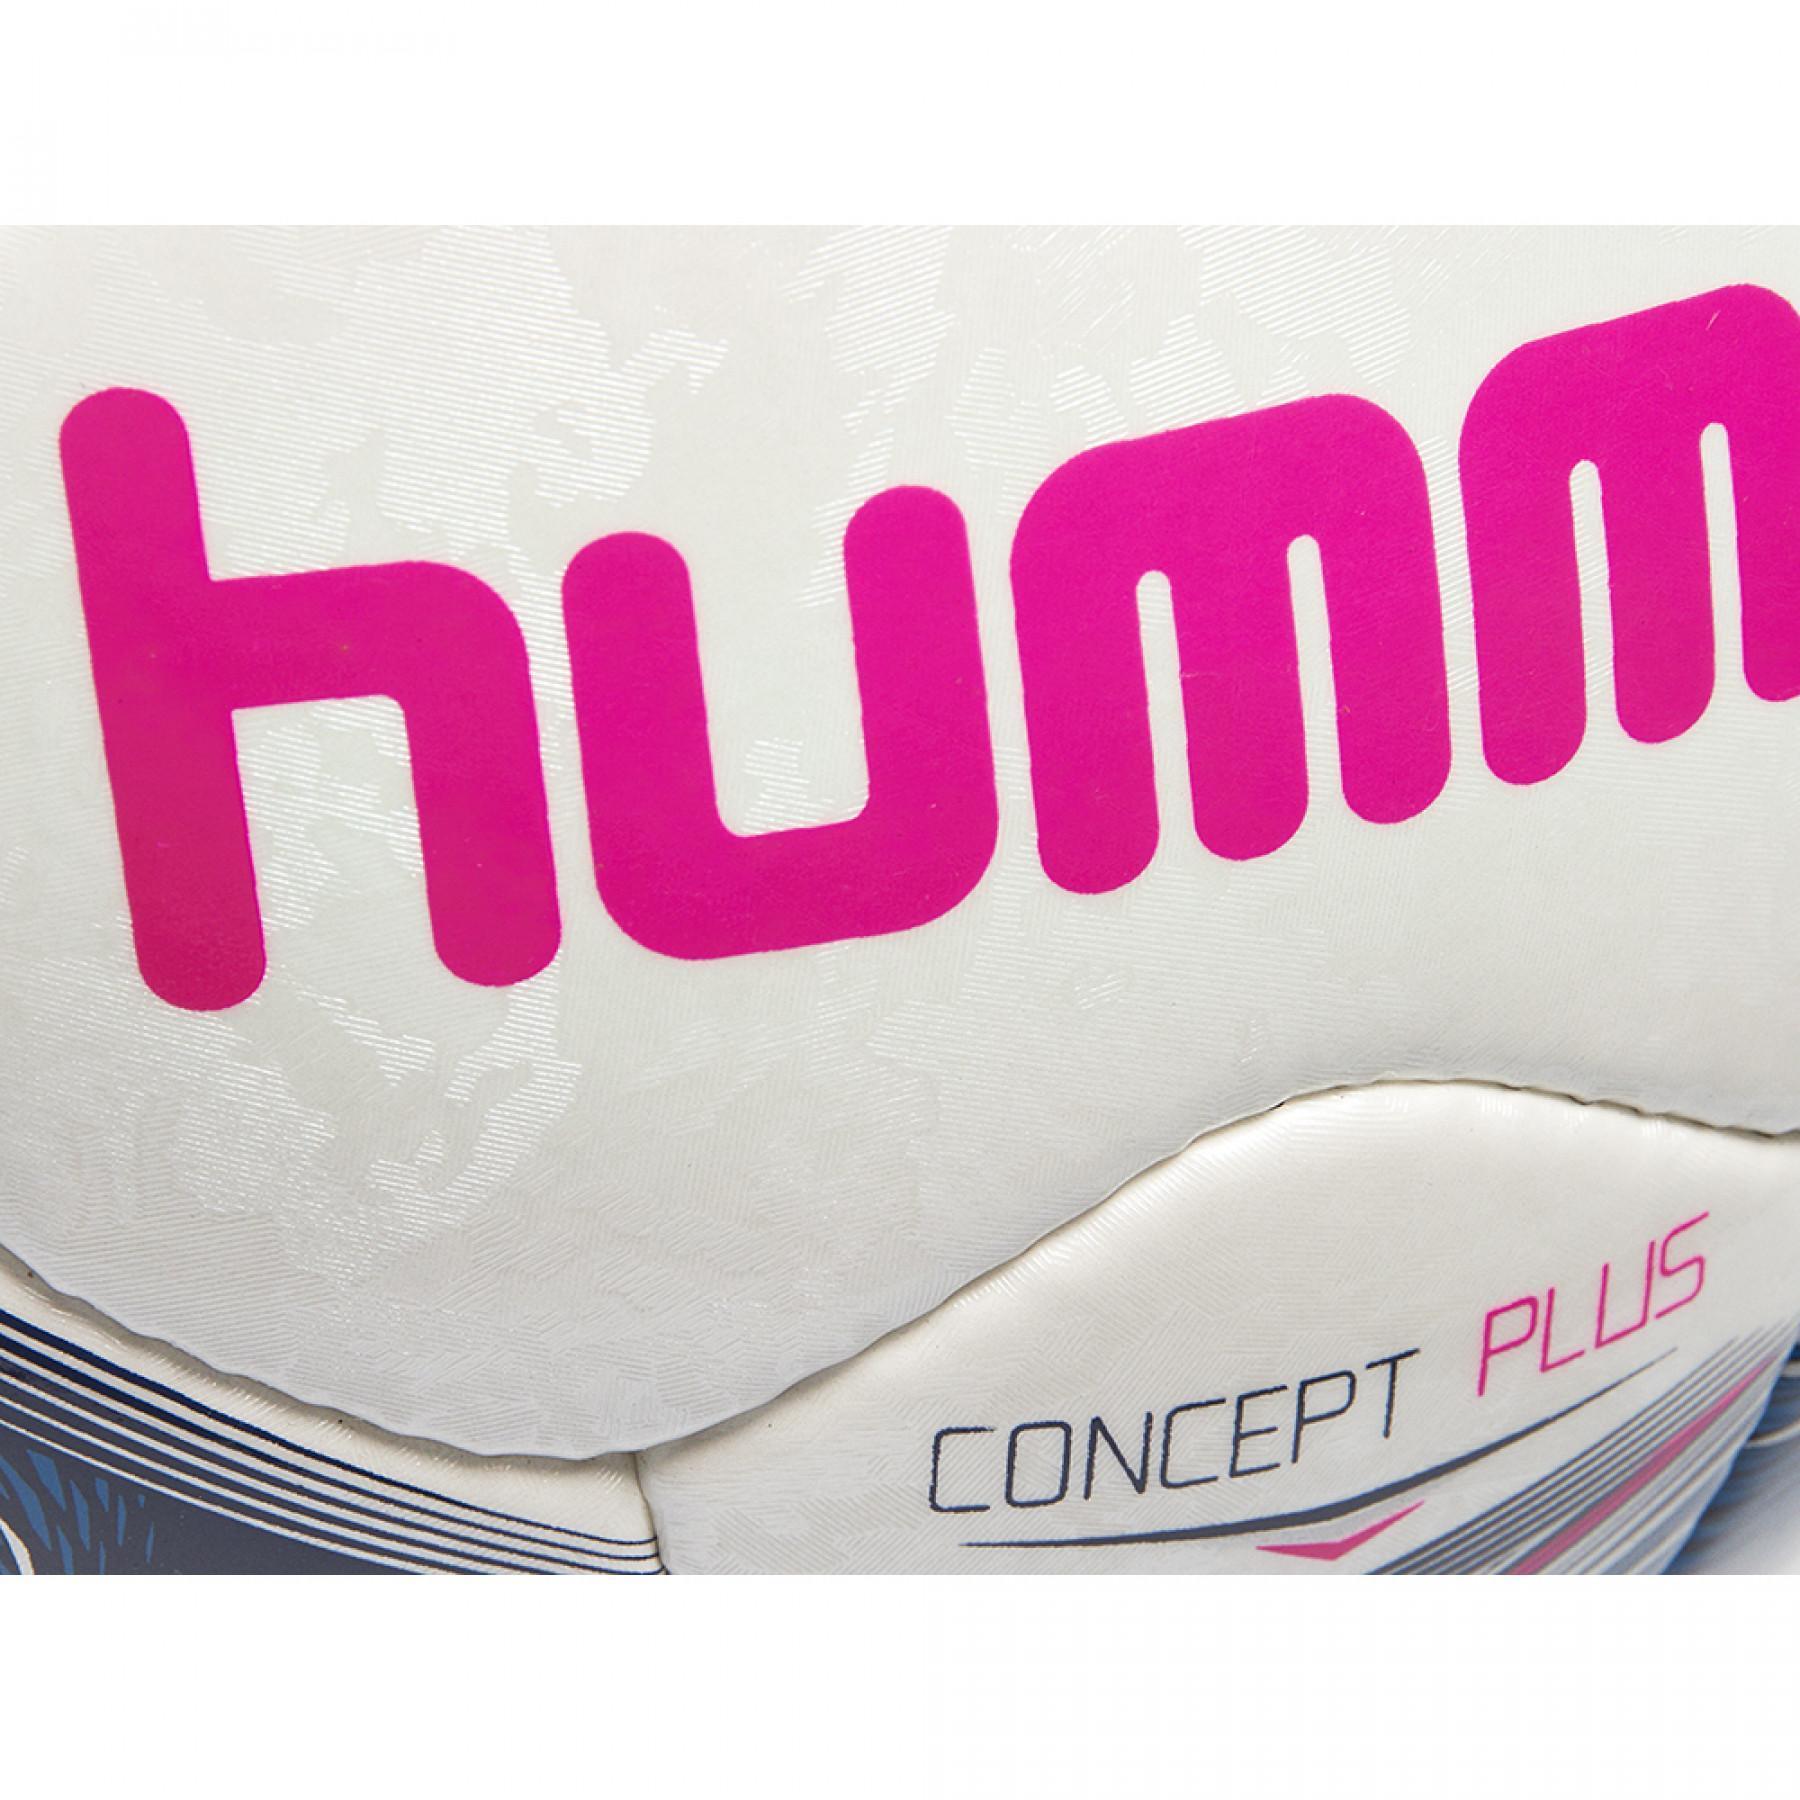 Ballon de football Hummel concept plus